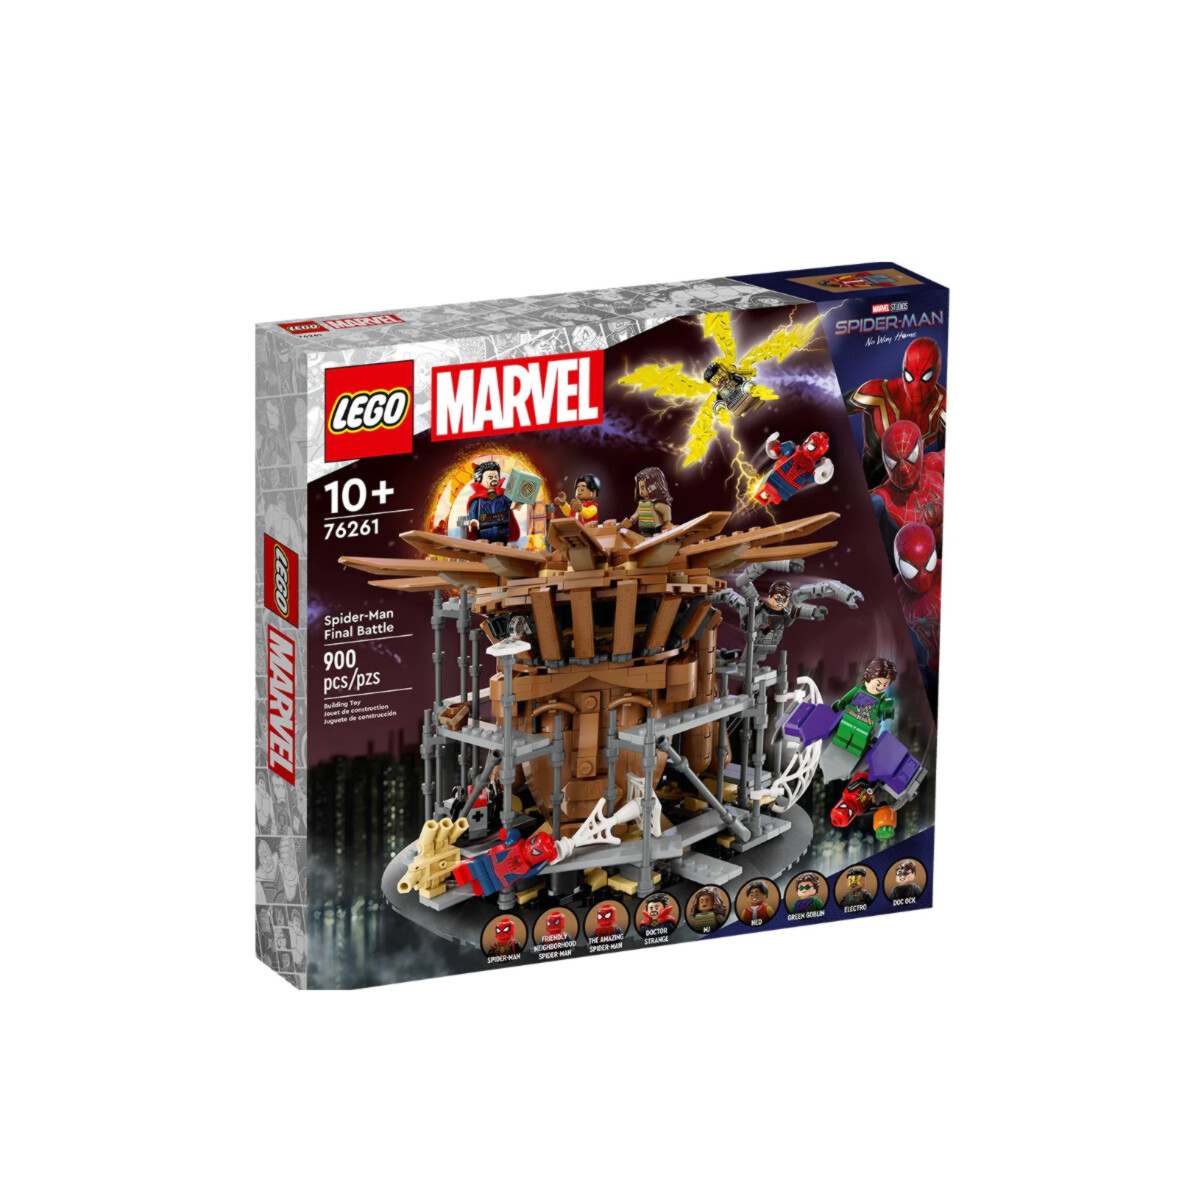 Lego Batalla Final de Spiderman 900p 76261 